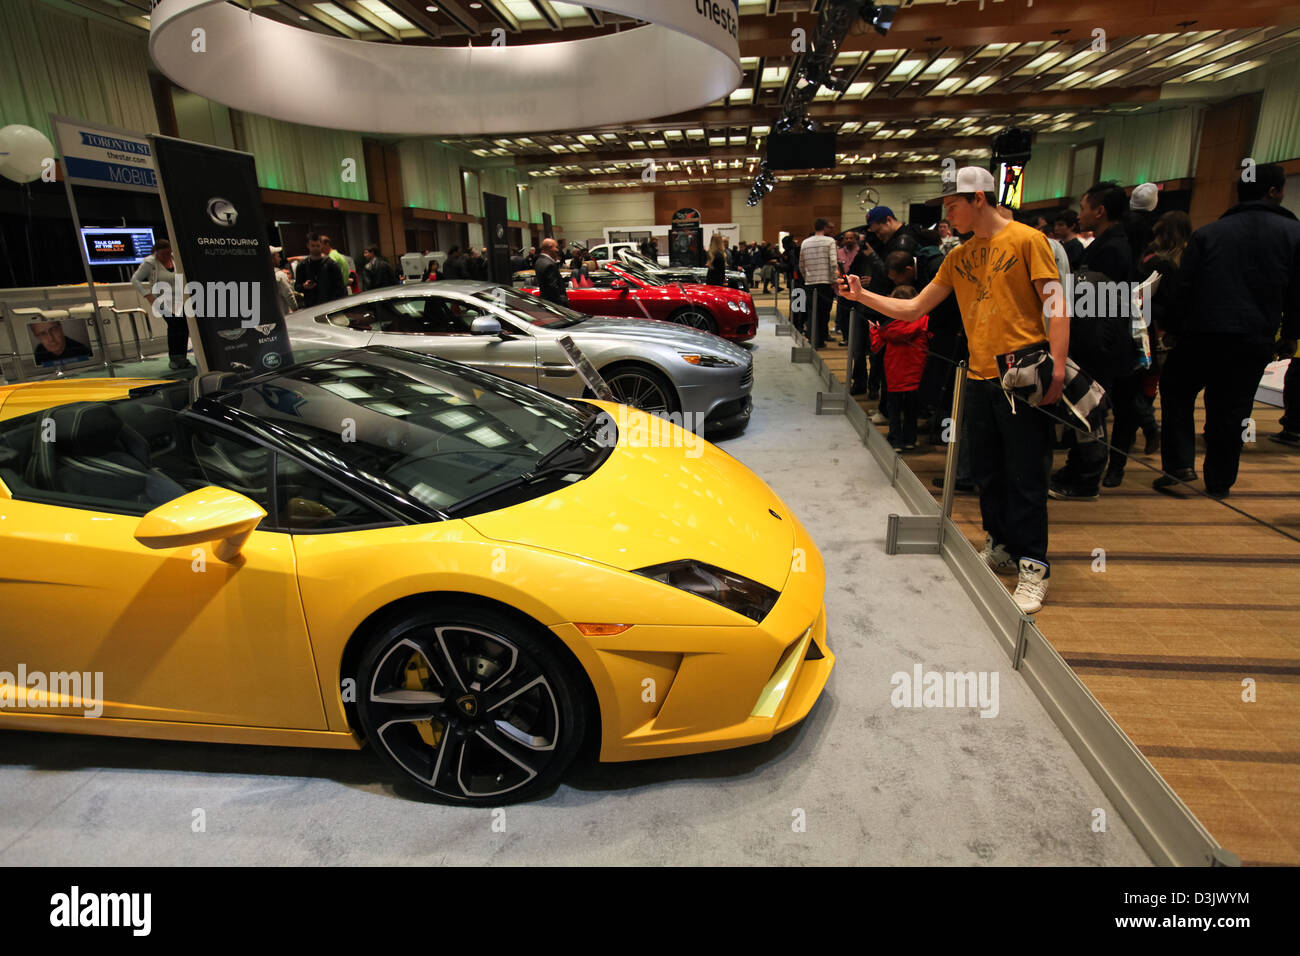 Prendre photo Lamborghini jaune car show Banque D'Images